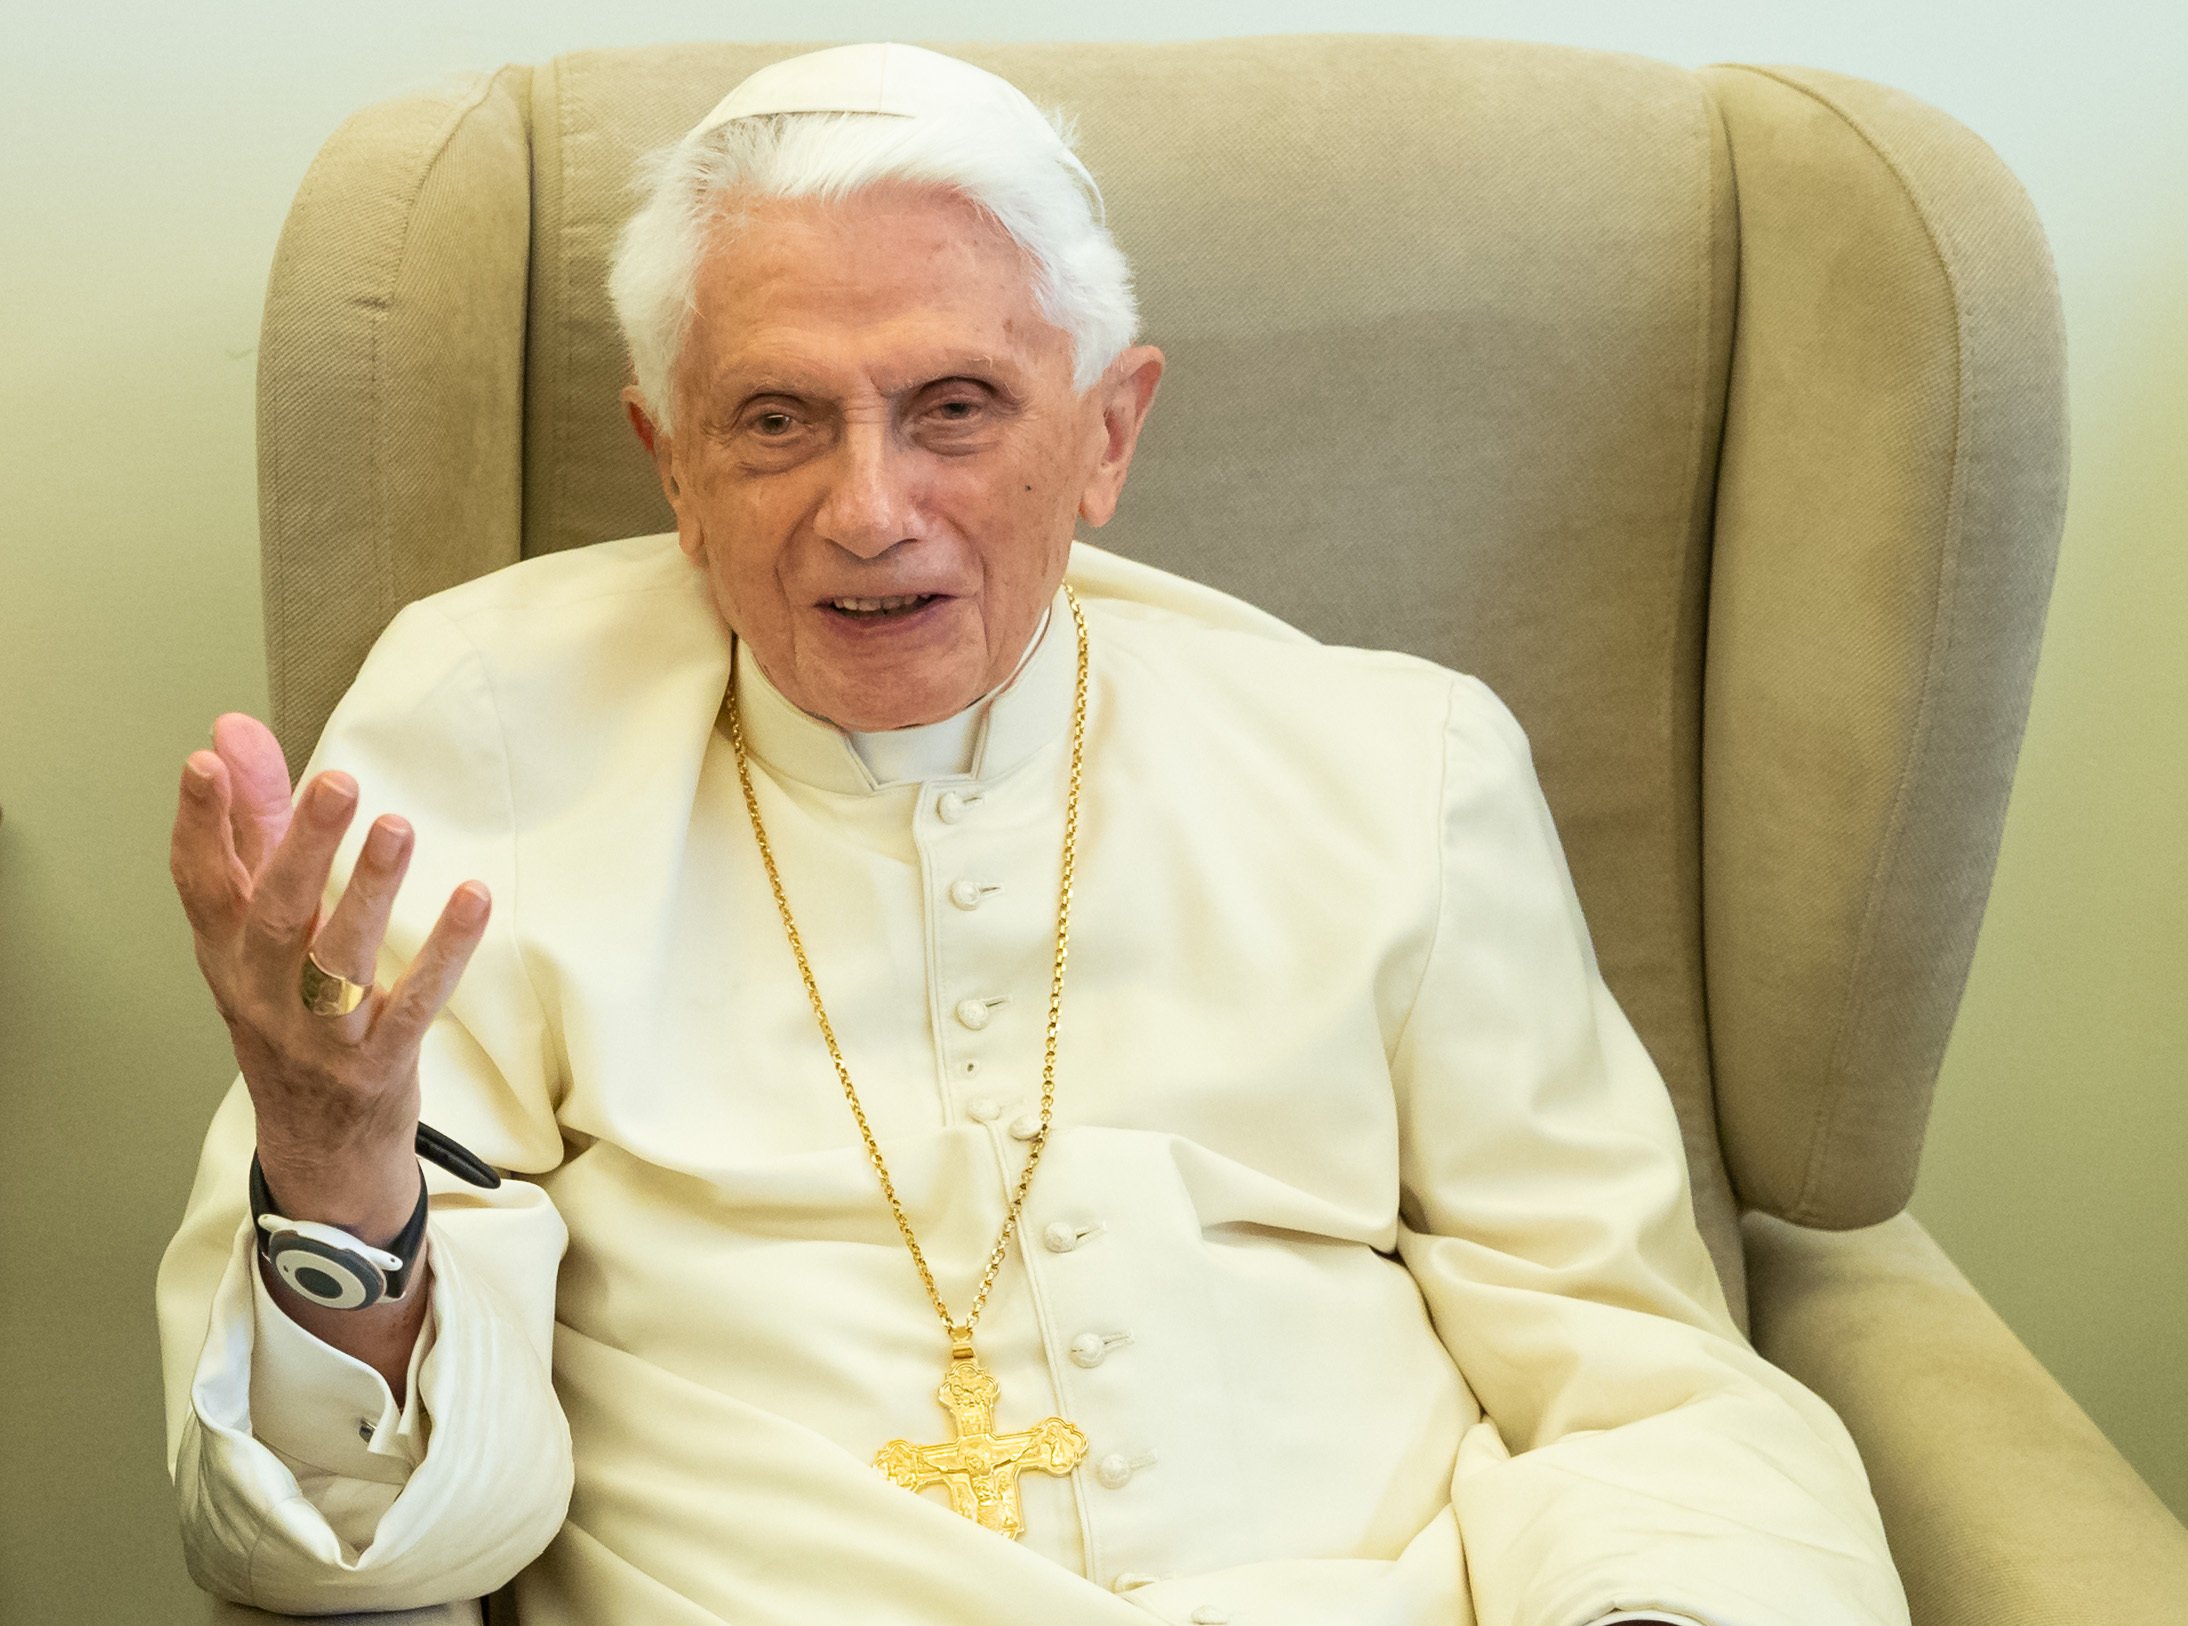 Benet XVI, "estable", assisteix a una missa a la seva habitació